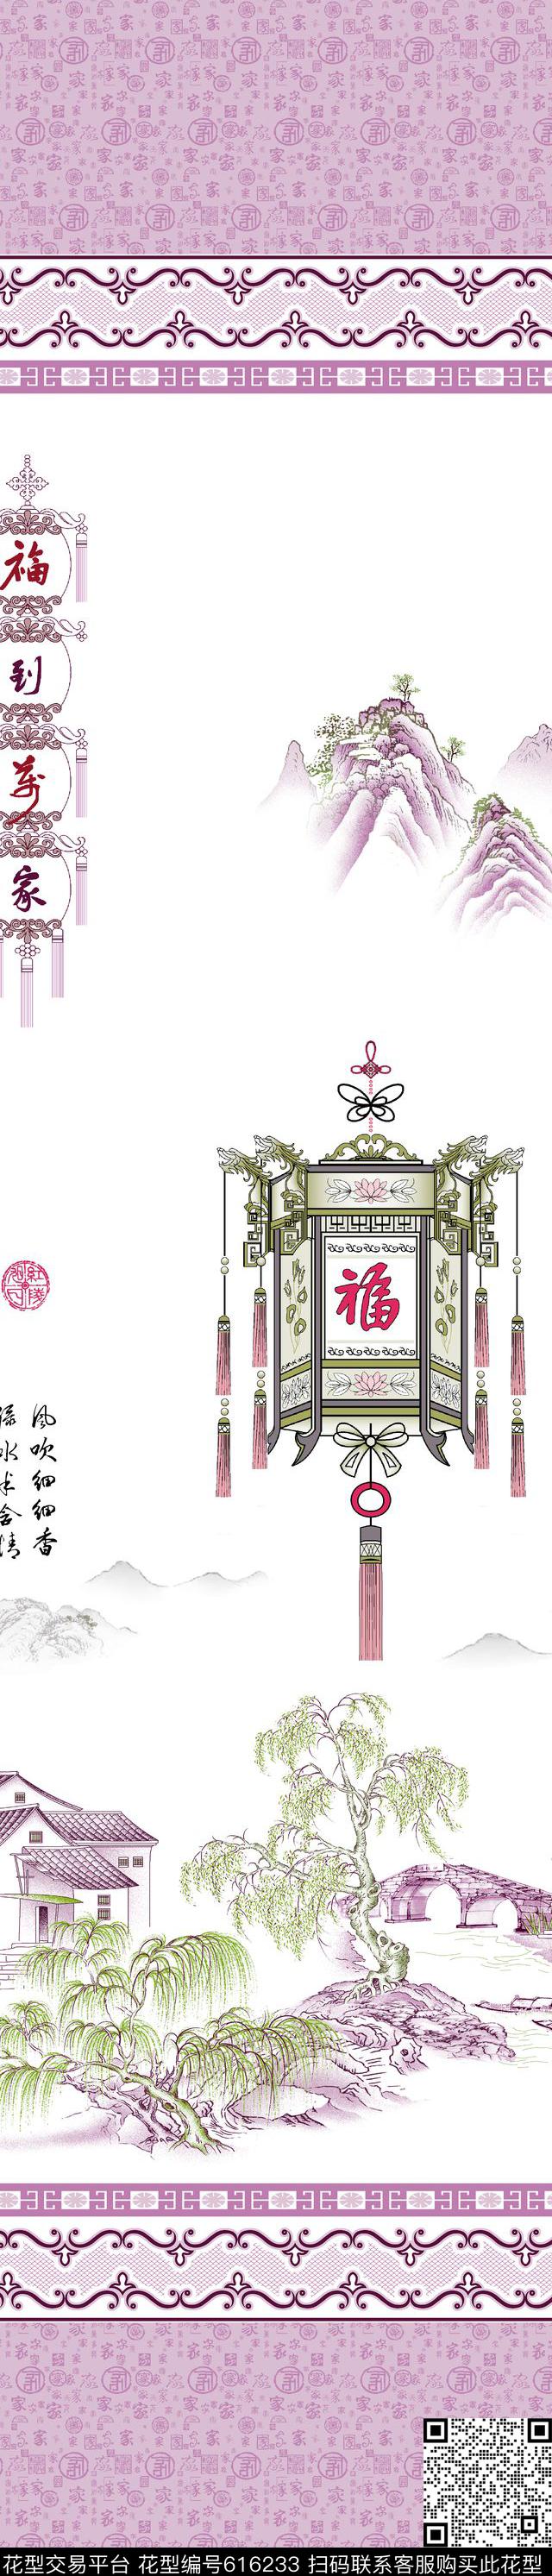 YJH130709p.jpg - 616233 - 窗帘 民族风 中国风 - 传统印花花型 － 窗帘花型设计 － 瓦栏